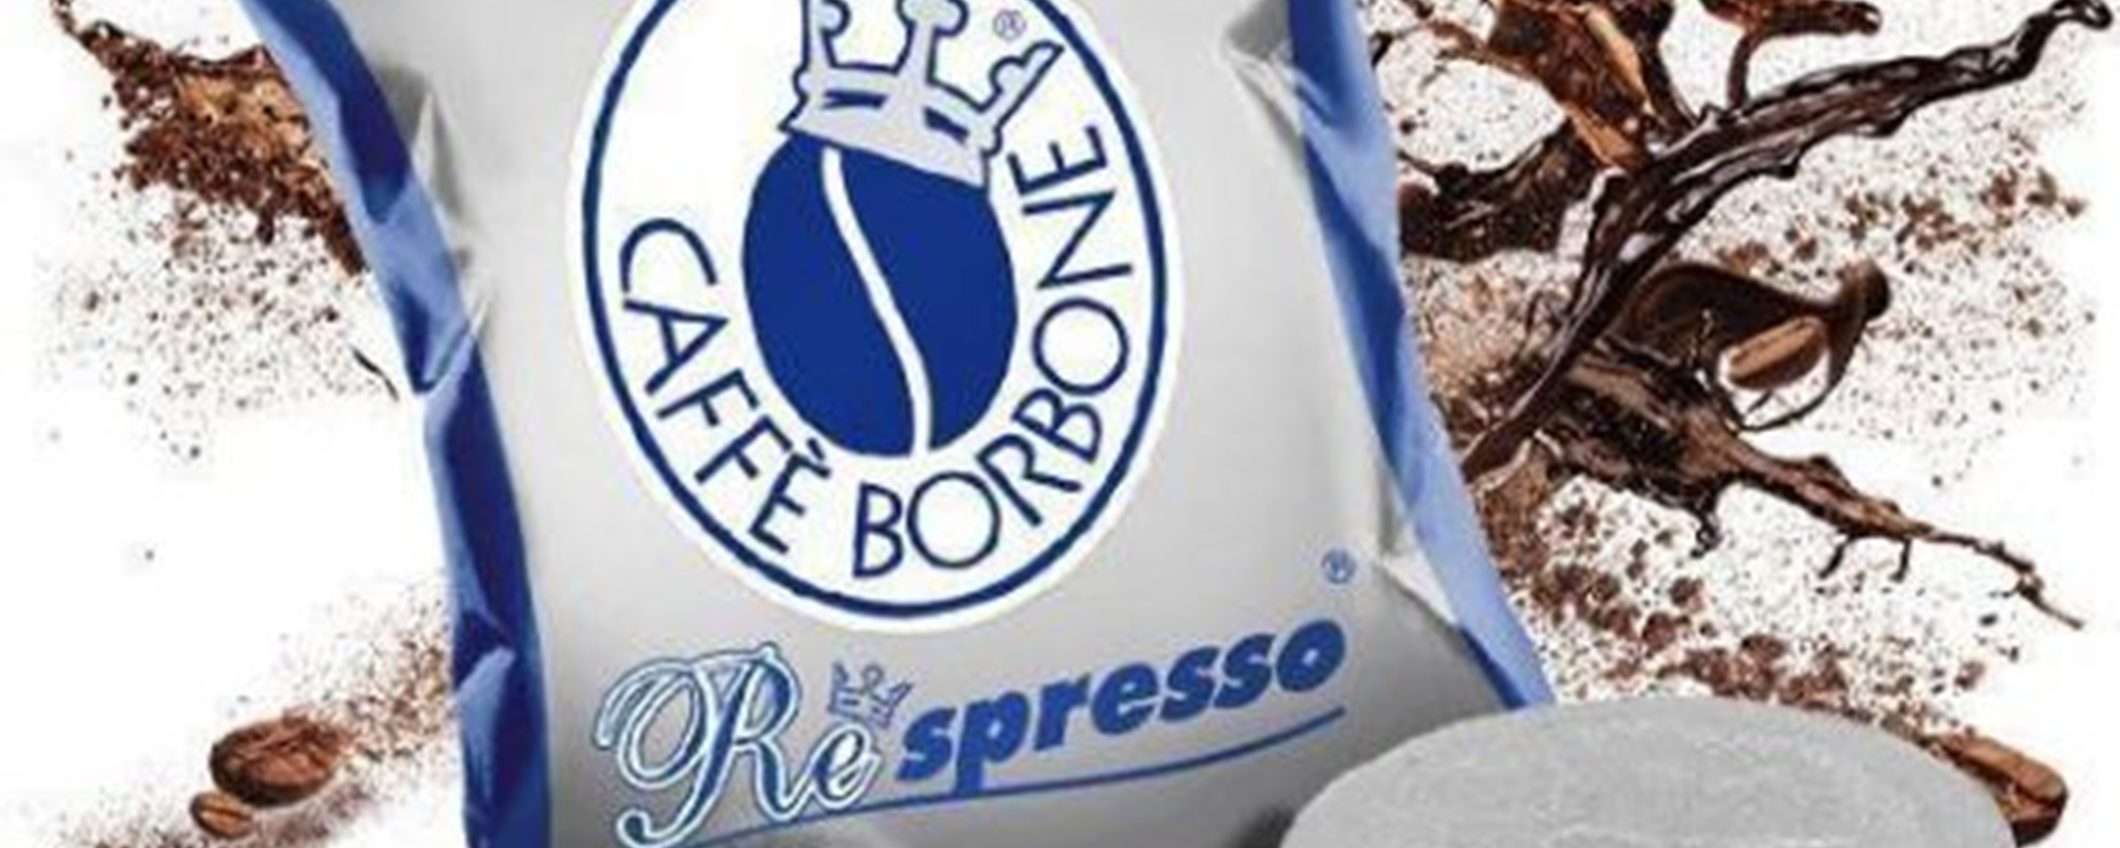 400 cialde caffè Borbone miscela Blu per Nespresso a soli 16cent ciascuna!